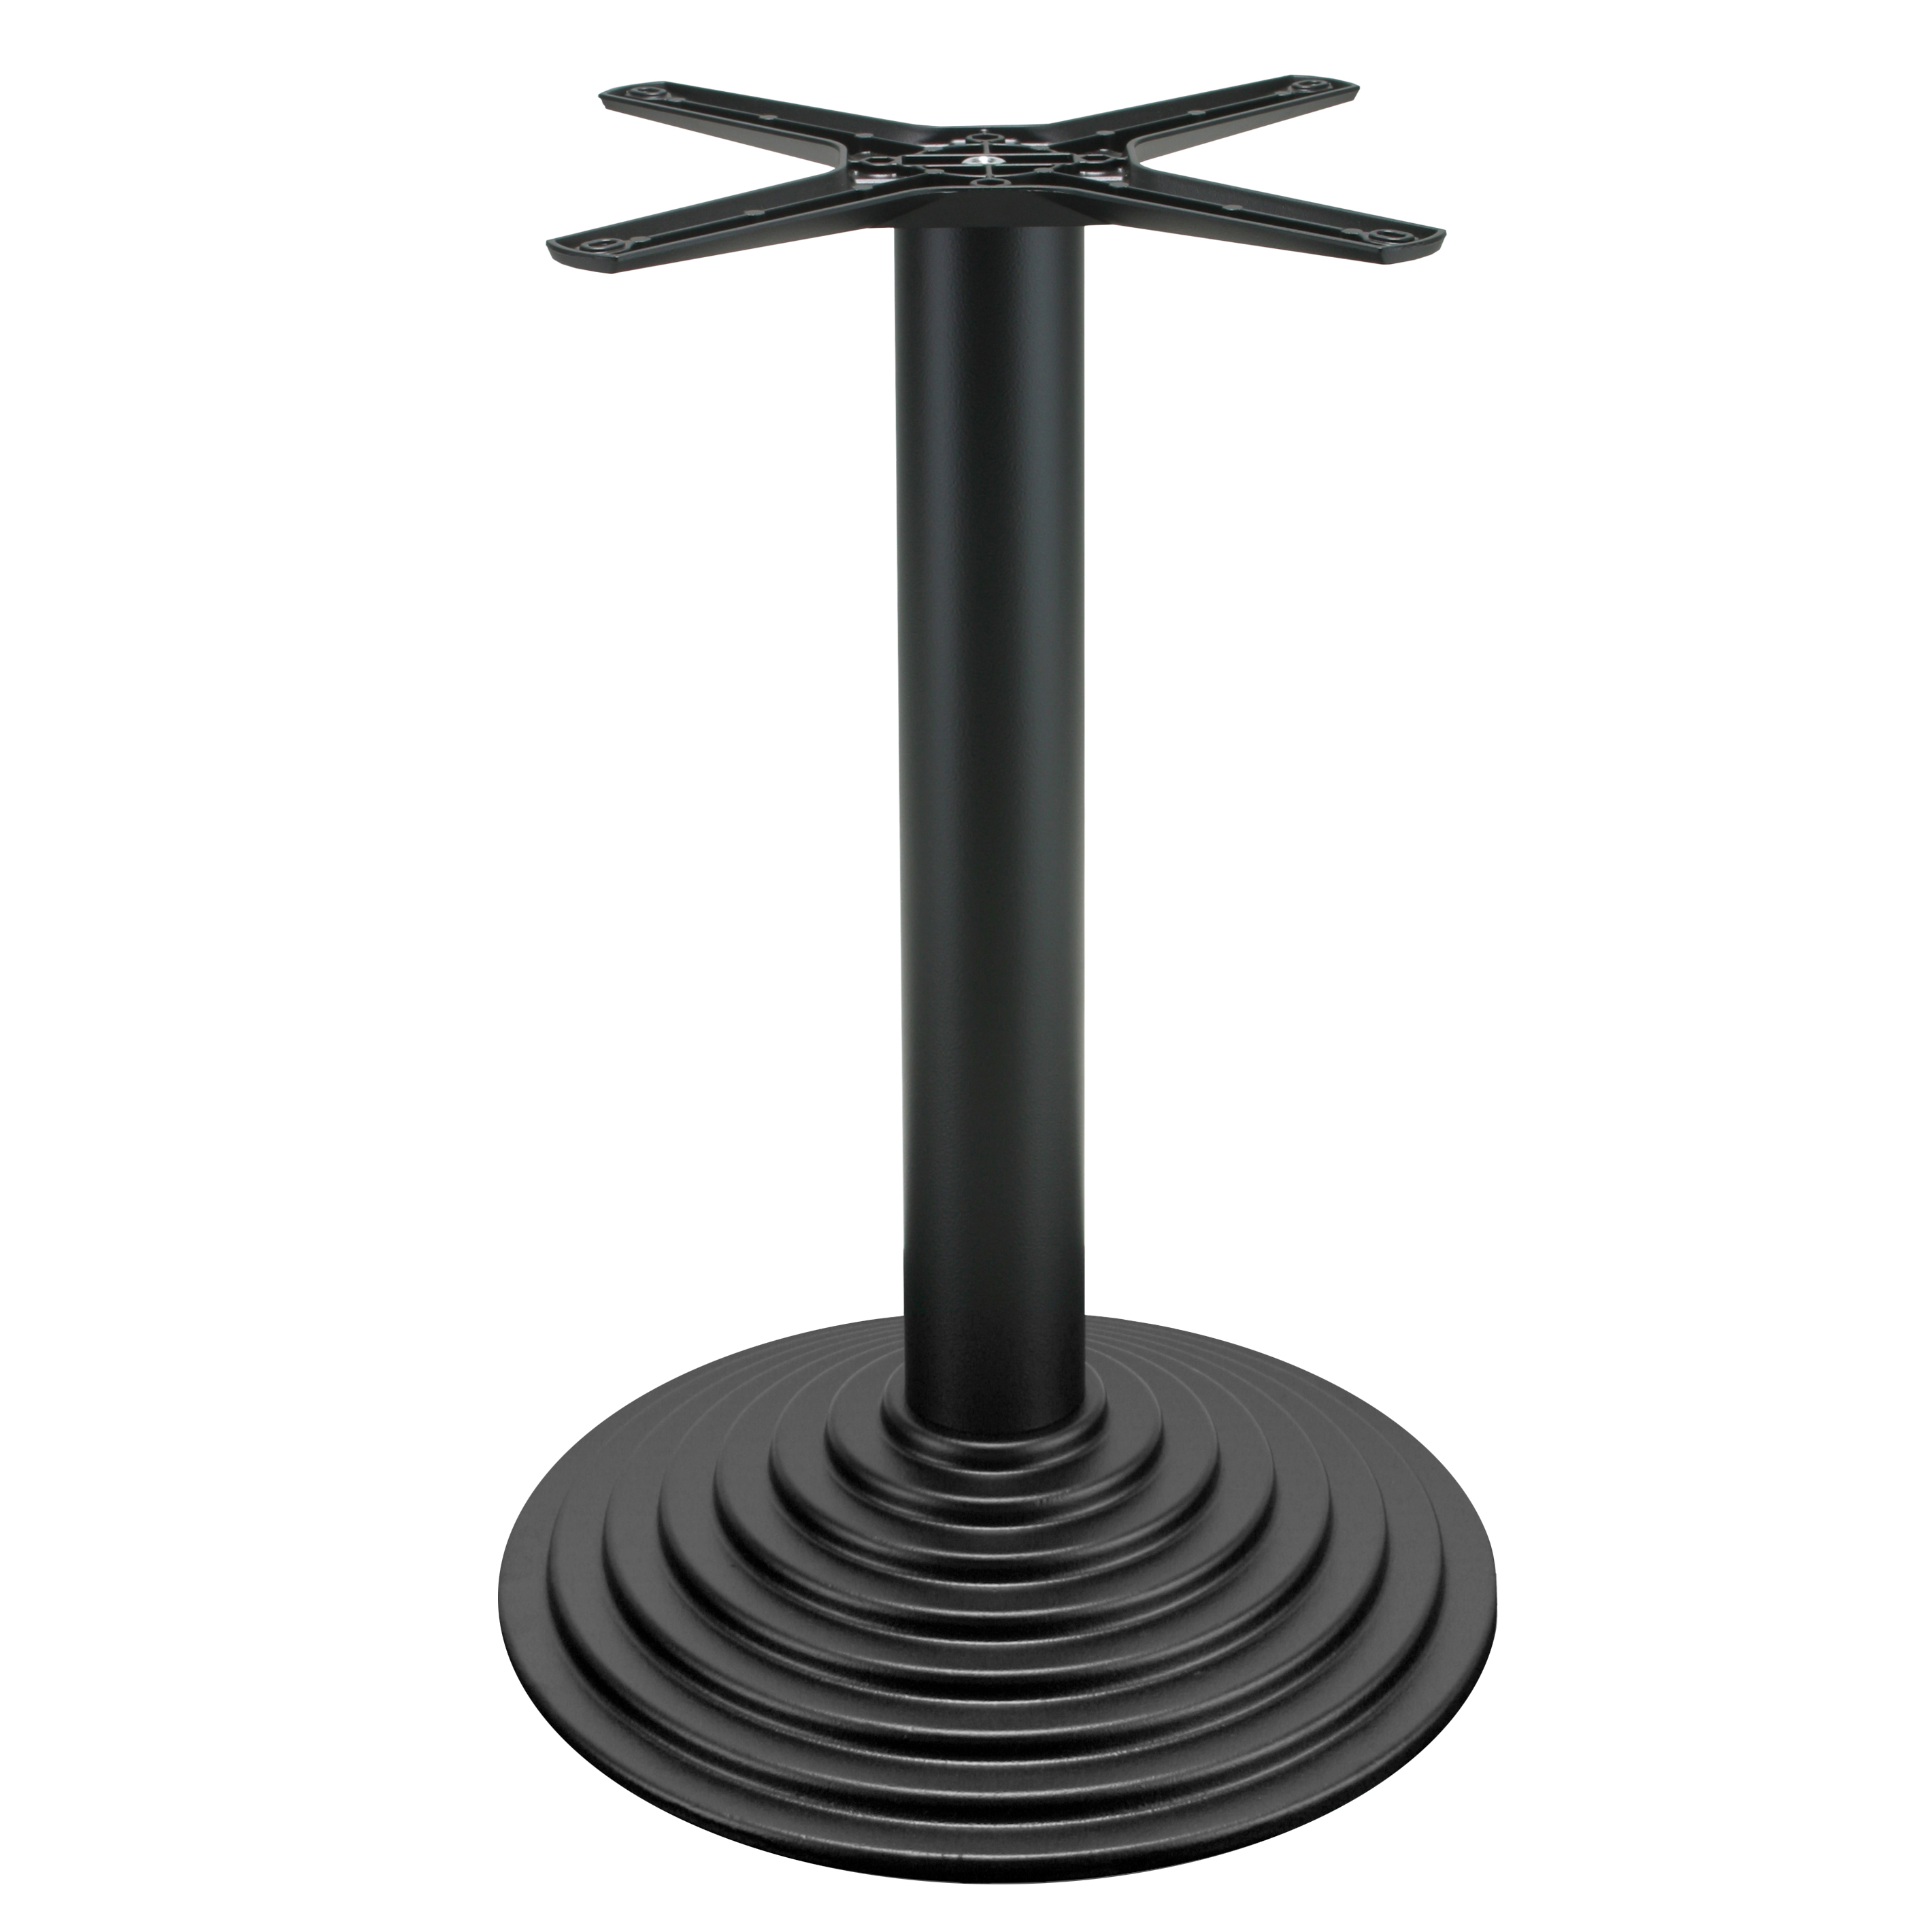 Tischgestell P102 - Gusseisen - pulverbeschichtet schwarz - runde Bodenplatte